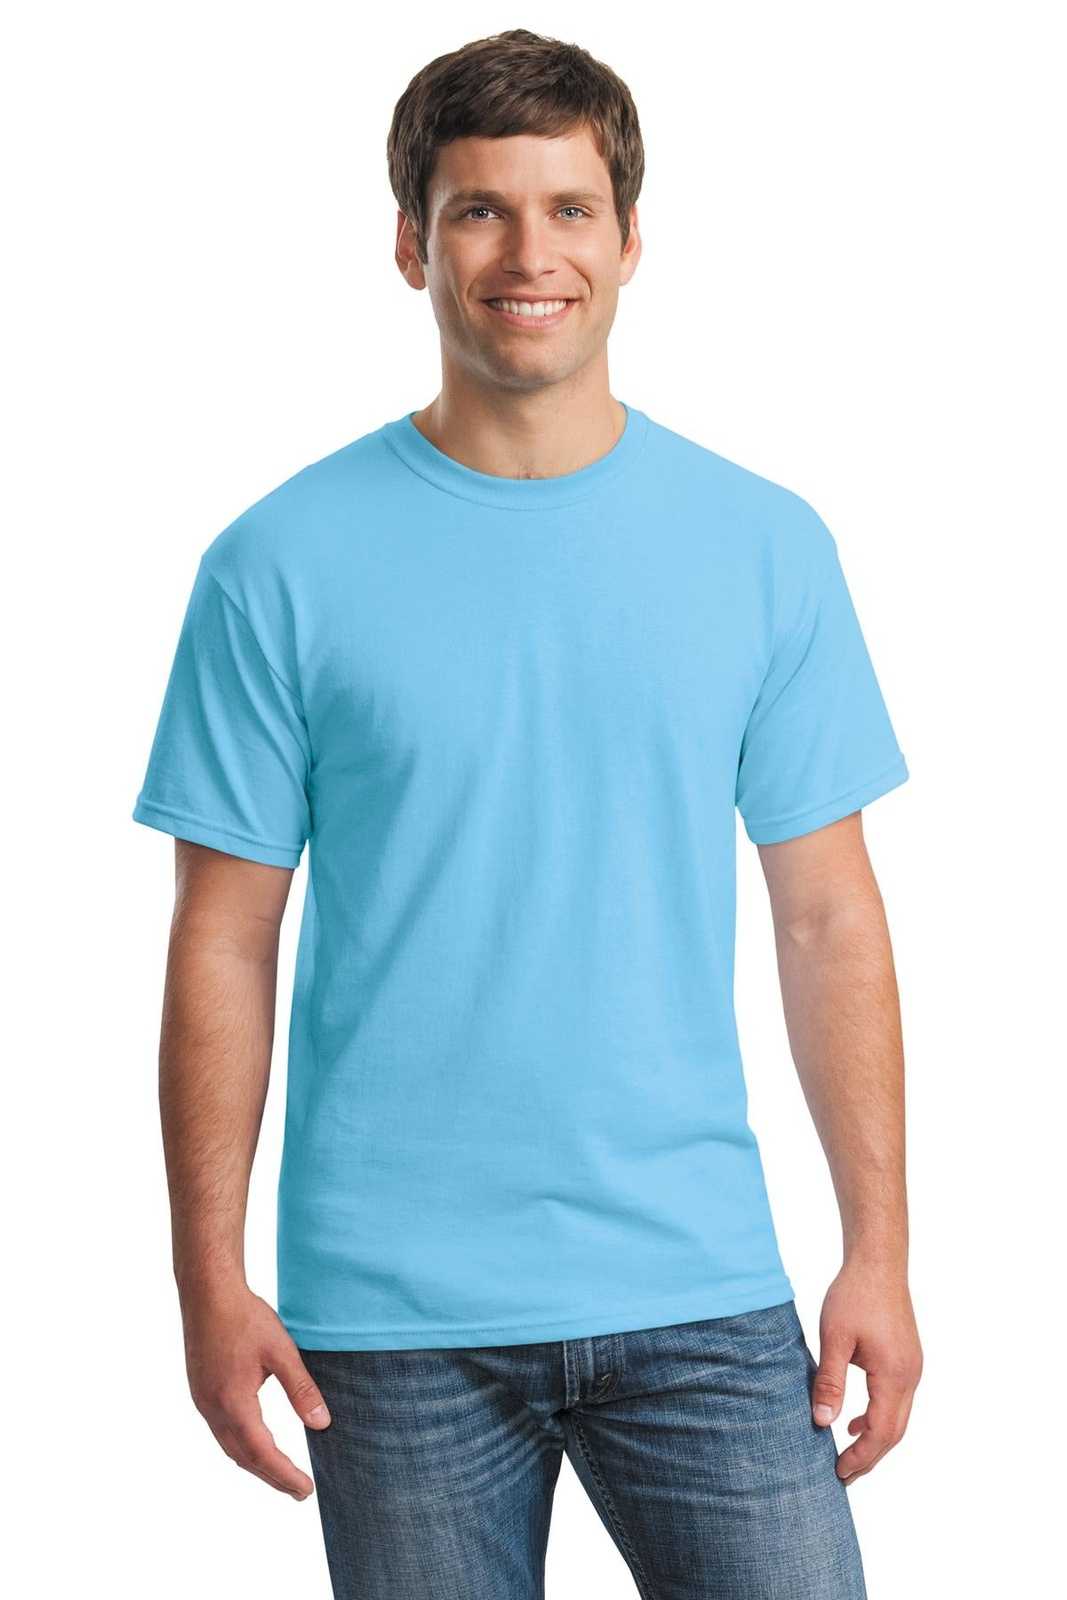 Gildan 5000 Heavy Cotton 100% Cotton T-Shirt - Sky - HIT a Double